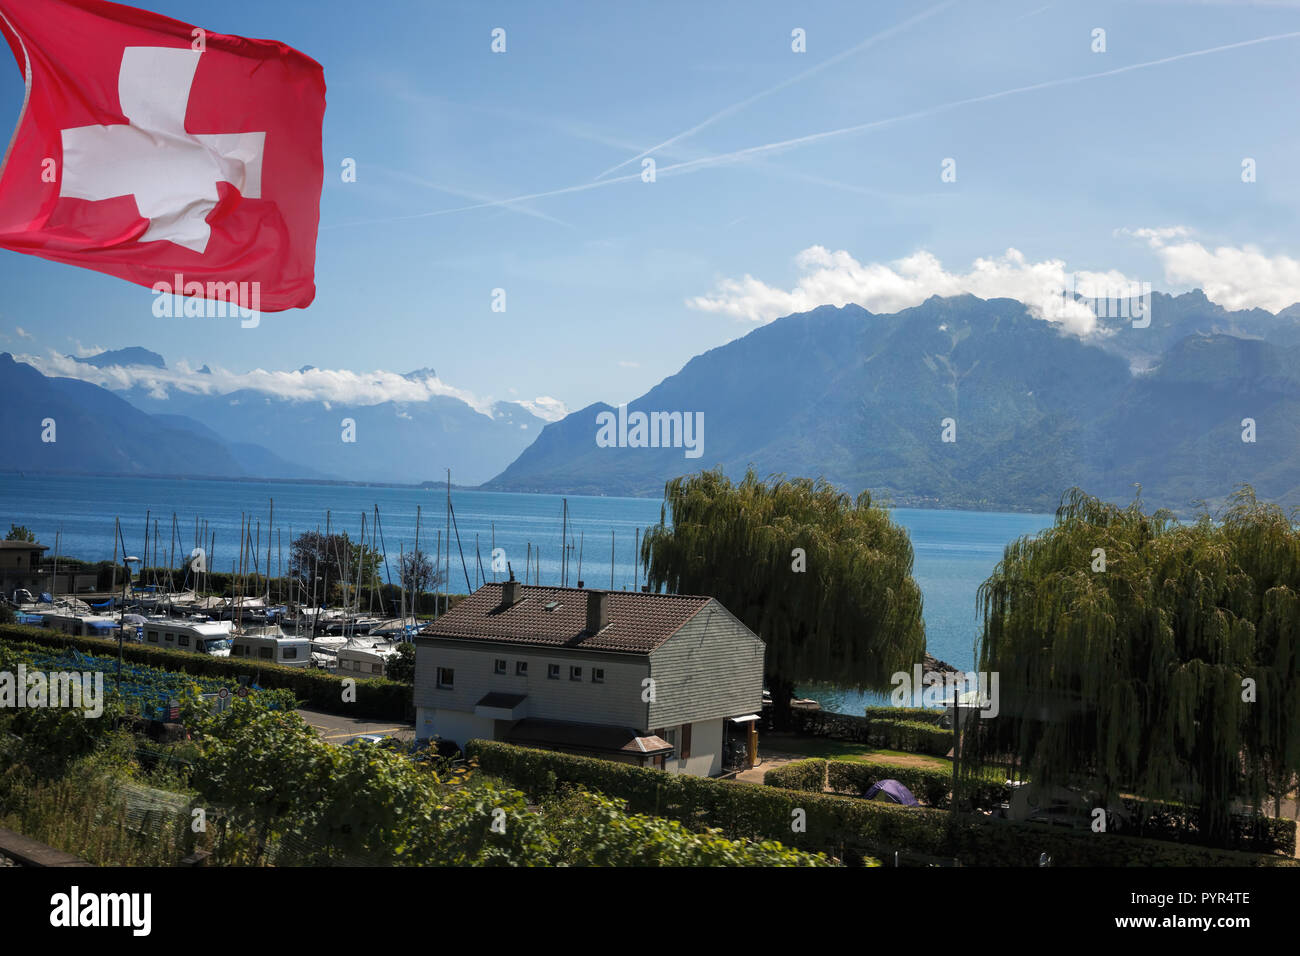 Genfer See mit Campingplatz in der Schweiz Stockfotografie - Alamy